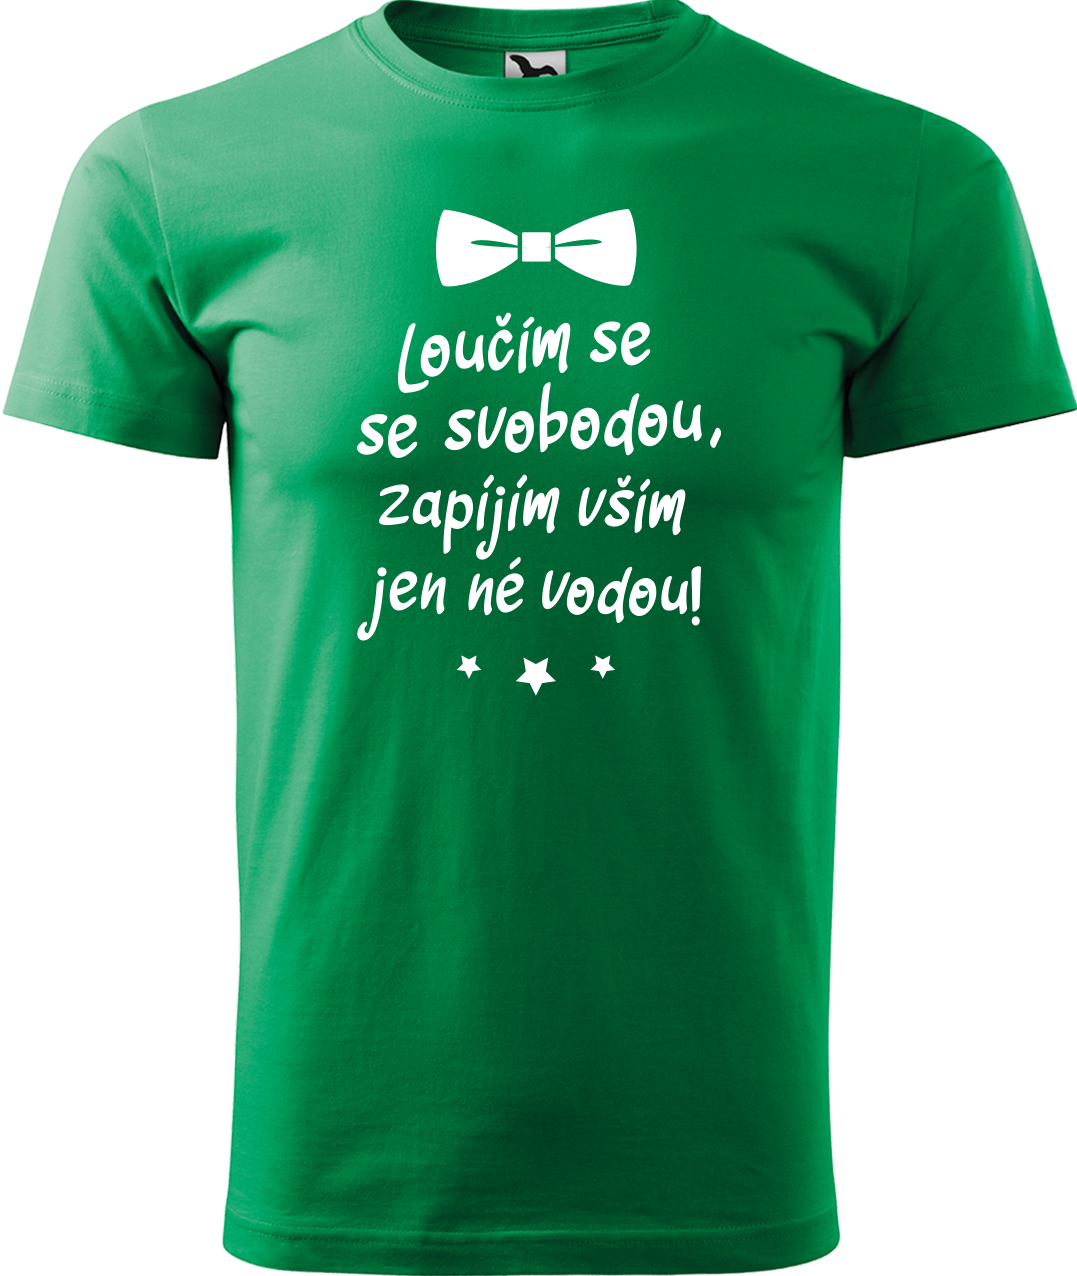 Tričko na rozlučku se svobodou - Loučím se se svobodou Velikost: L, Barva: Středně zelená (16)